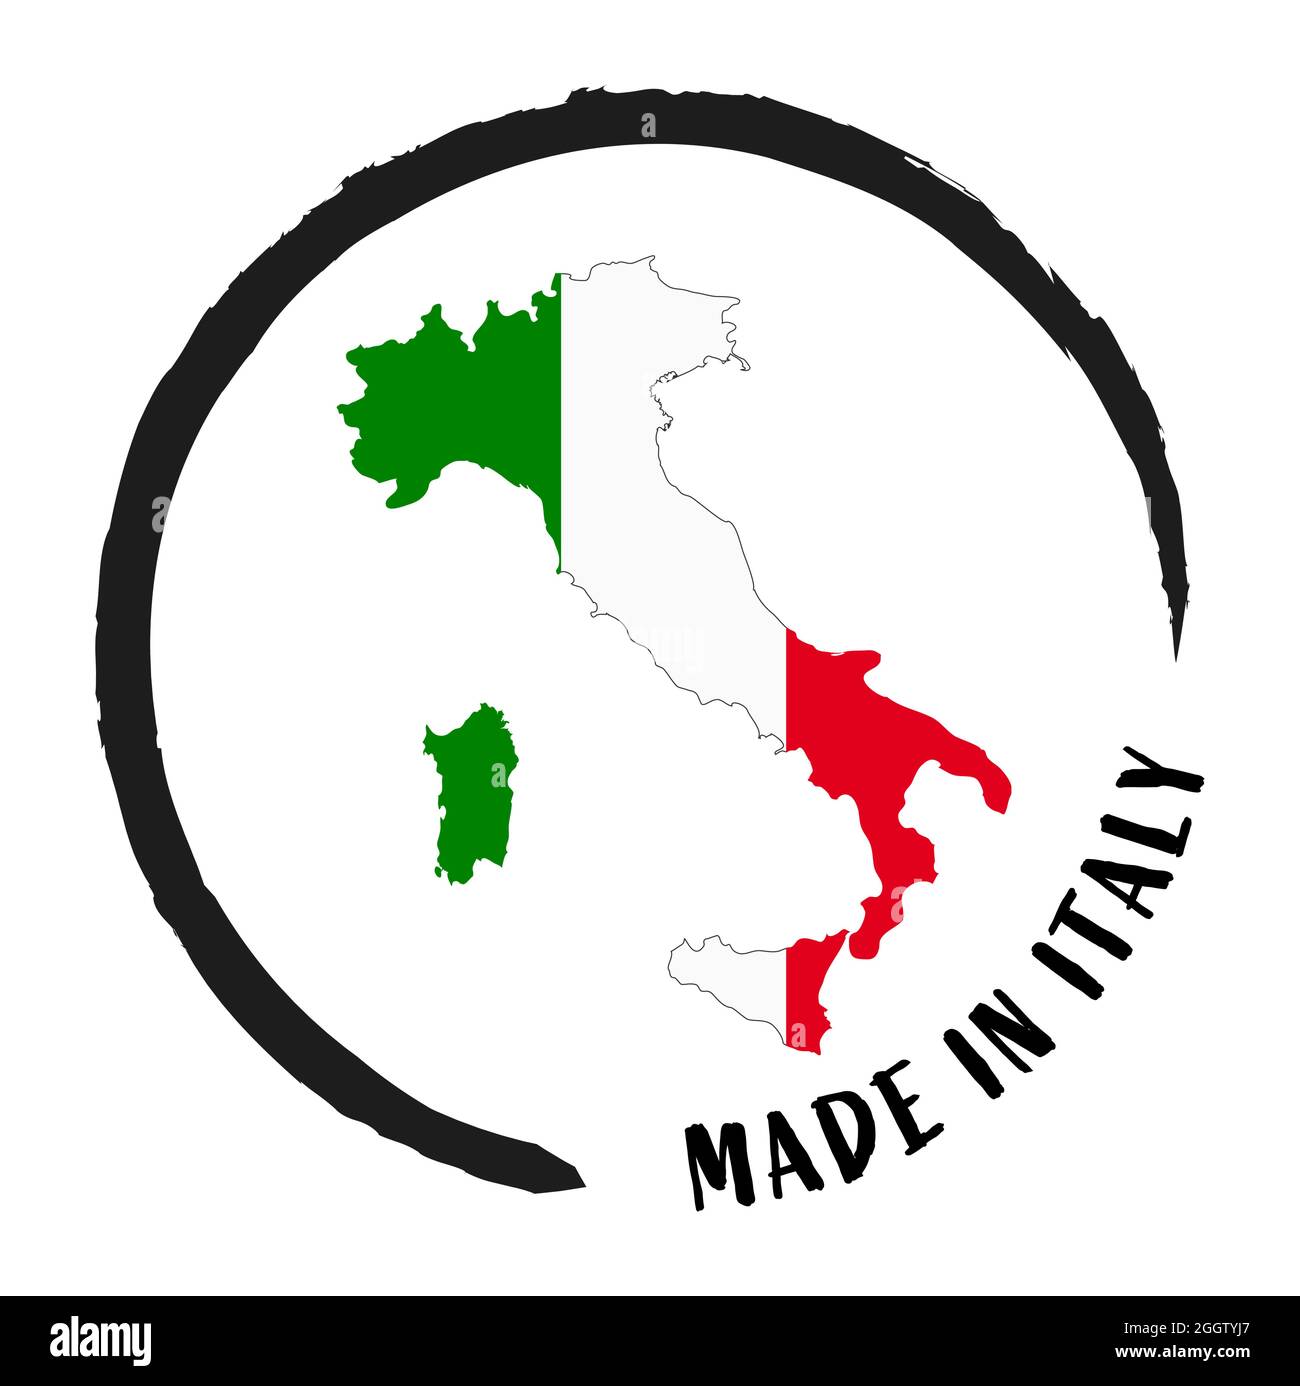 fichier vectoriel eps avec tampon d'affaires, patch rond ' Made in Italy '  avec silhouette de l'italie et couleurs nationales Image Vectorielle Stock  - Alamy